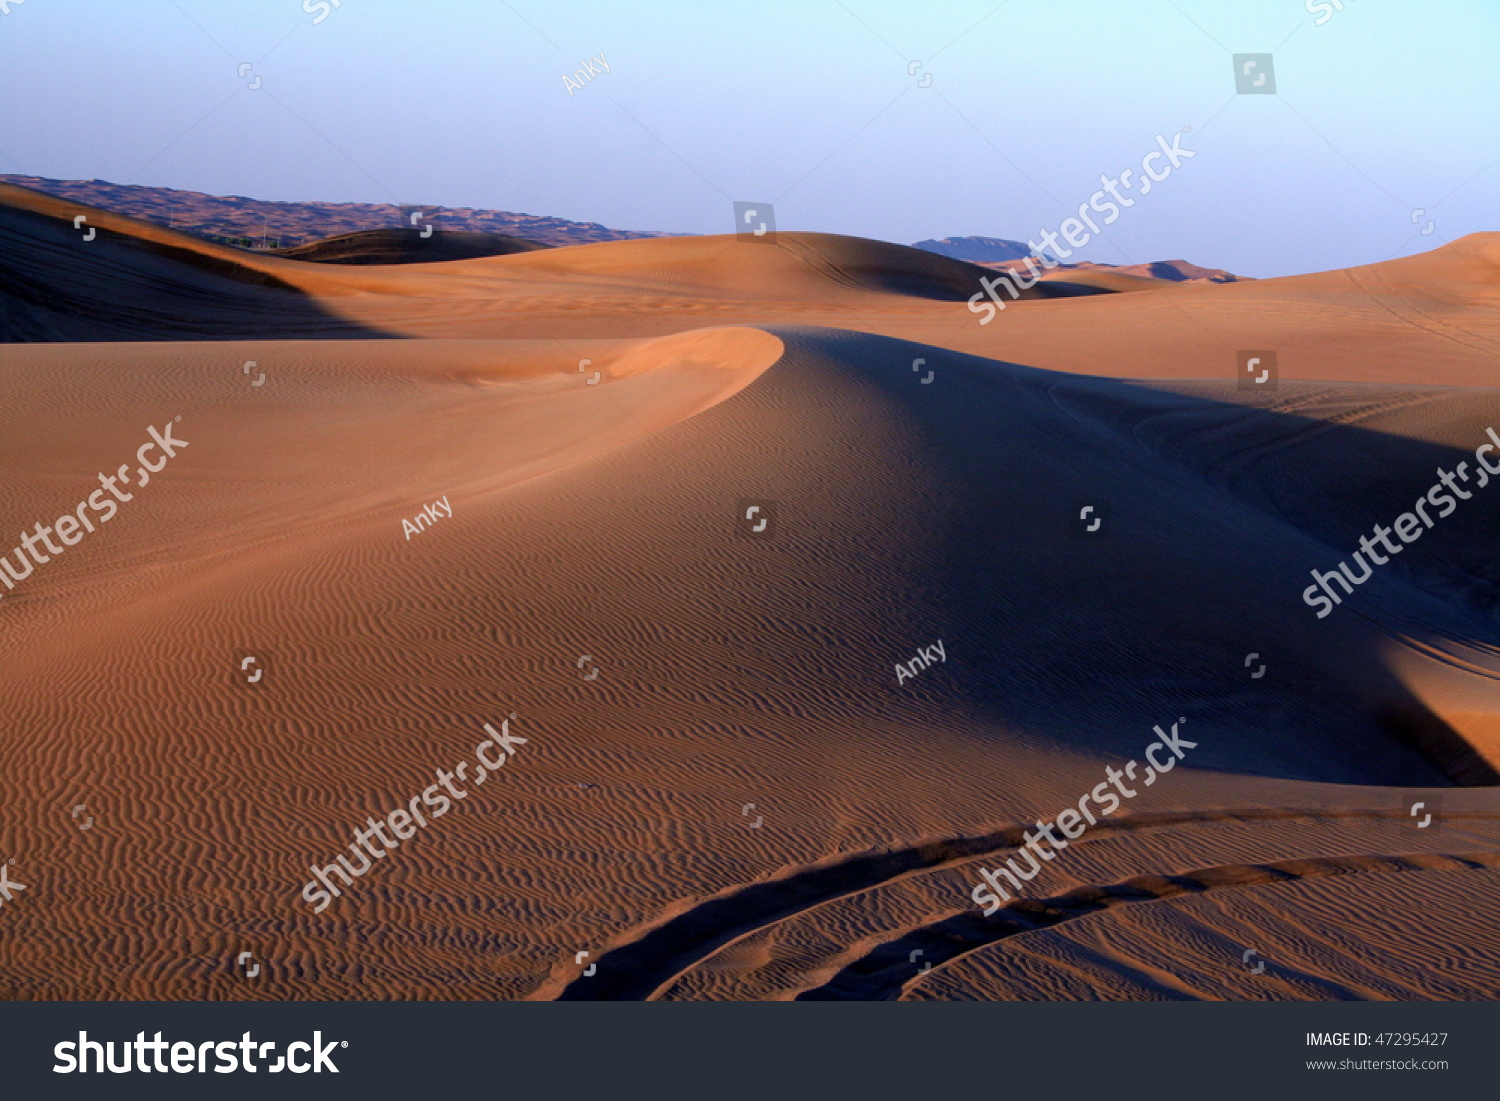 Desert safari dune bashing near Dubai, at sunset. #47295427